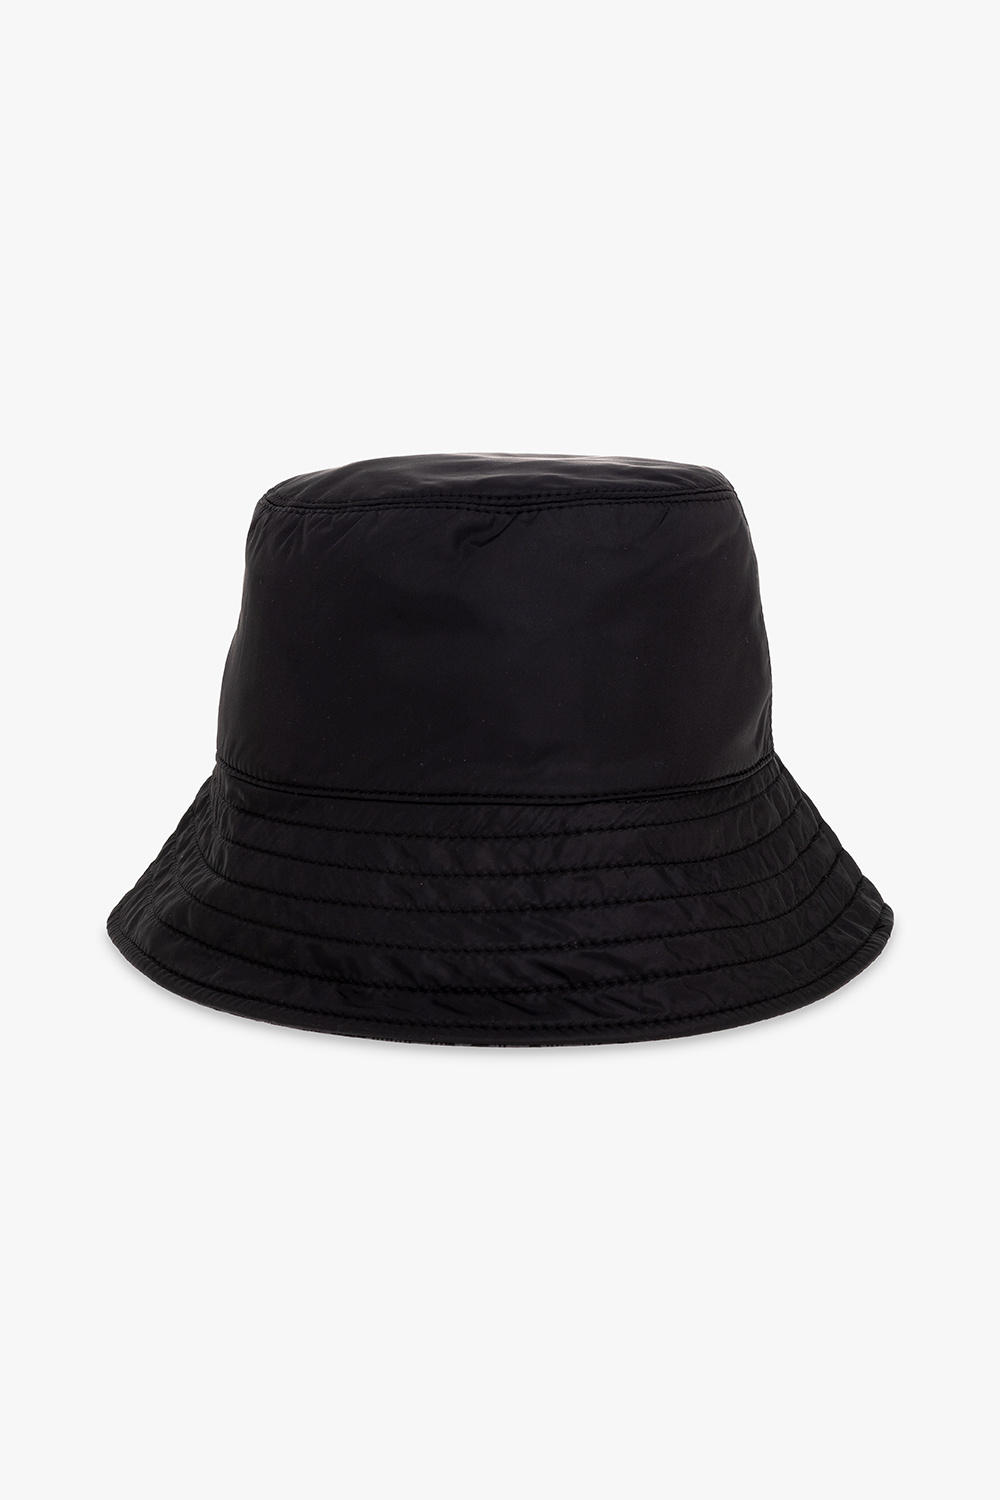 Salvatore Ferragamo Vans Level Up Womens Bucket wedding hat